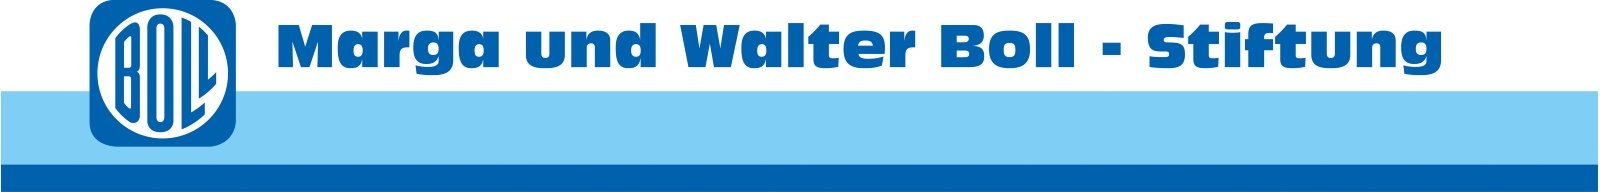 kja-koeln.de | Marga und Walter Boll Stiftung_Logo